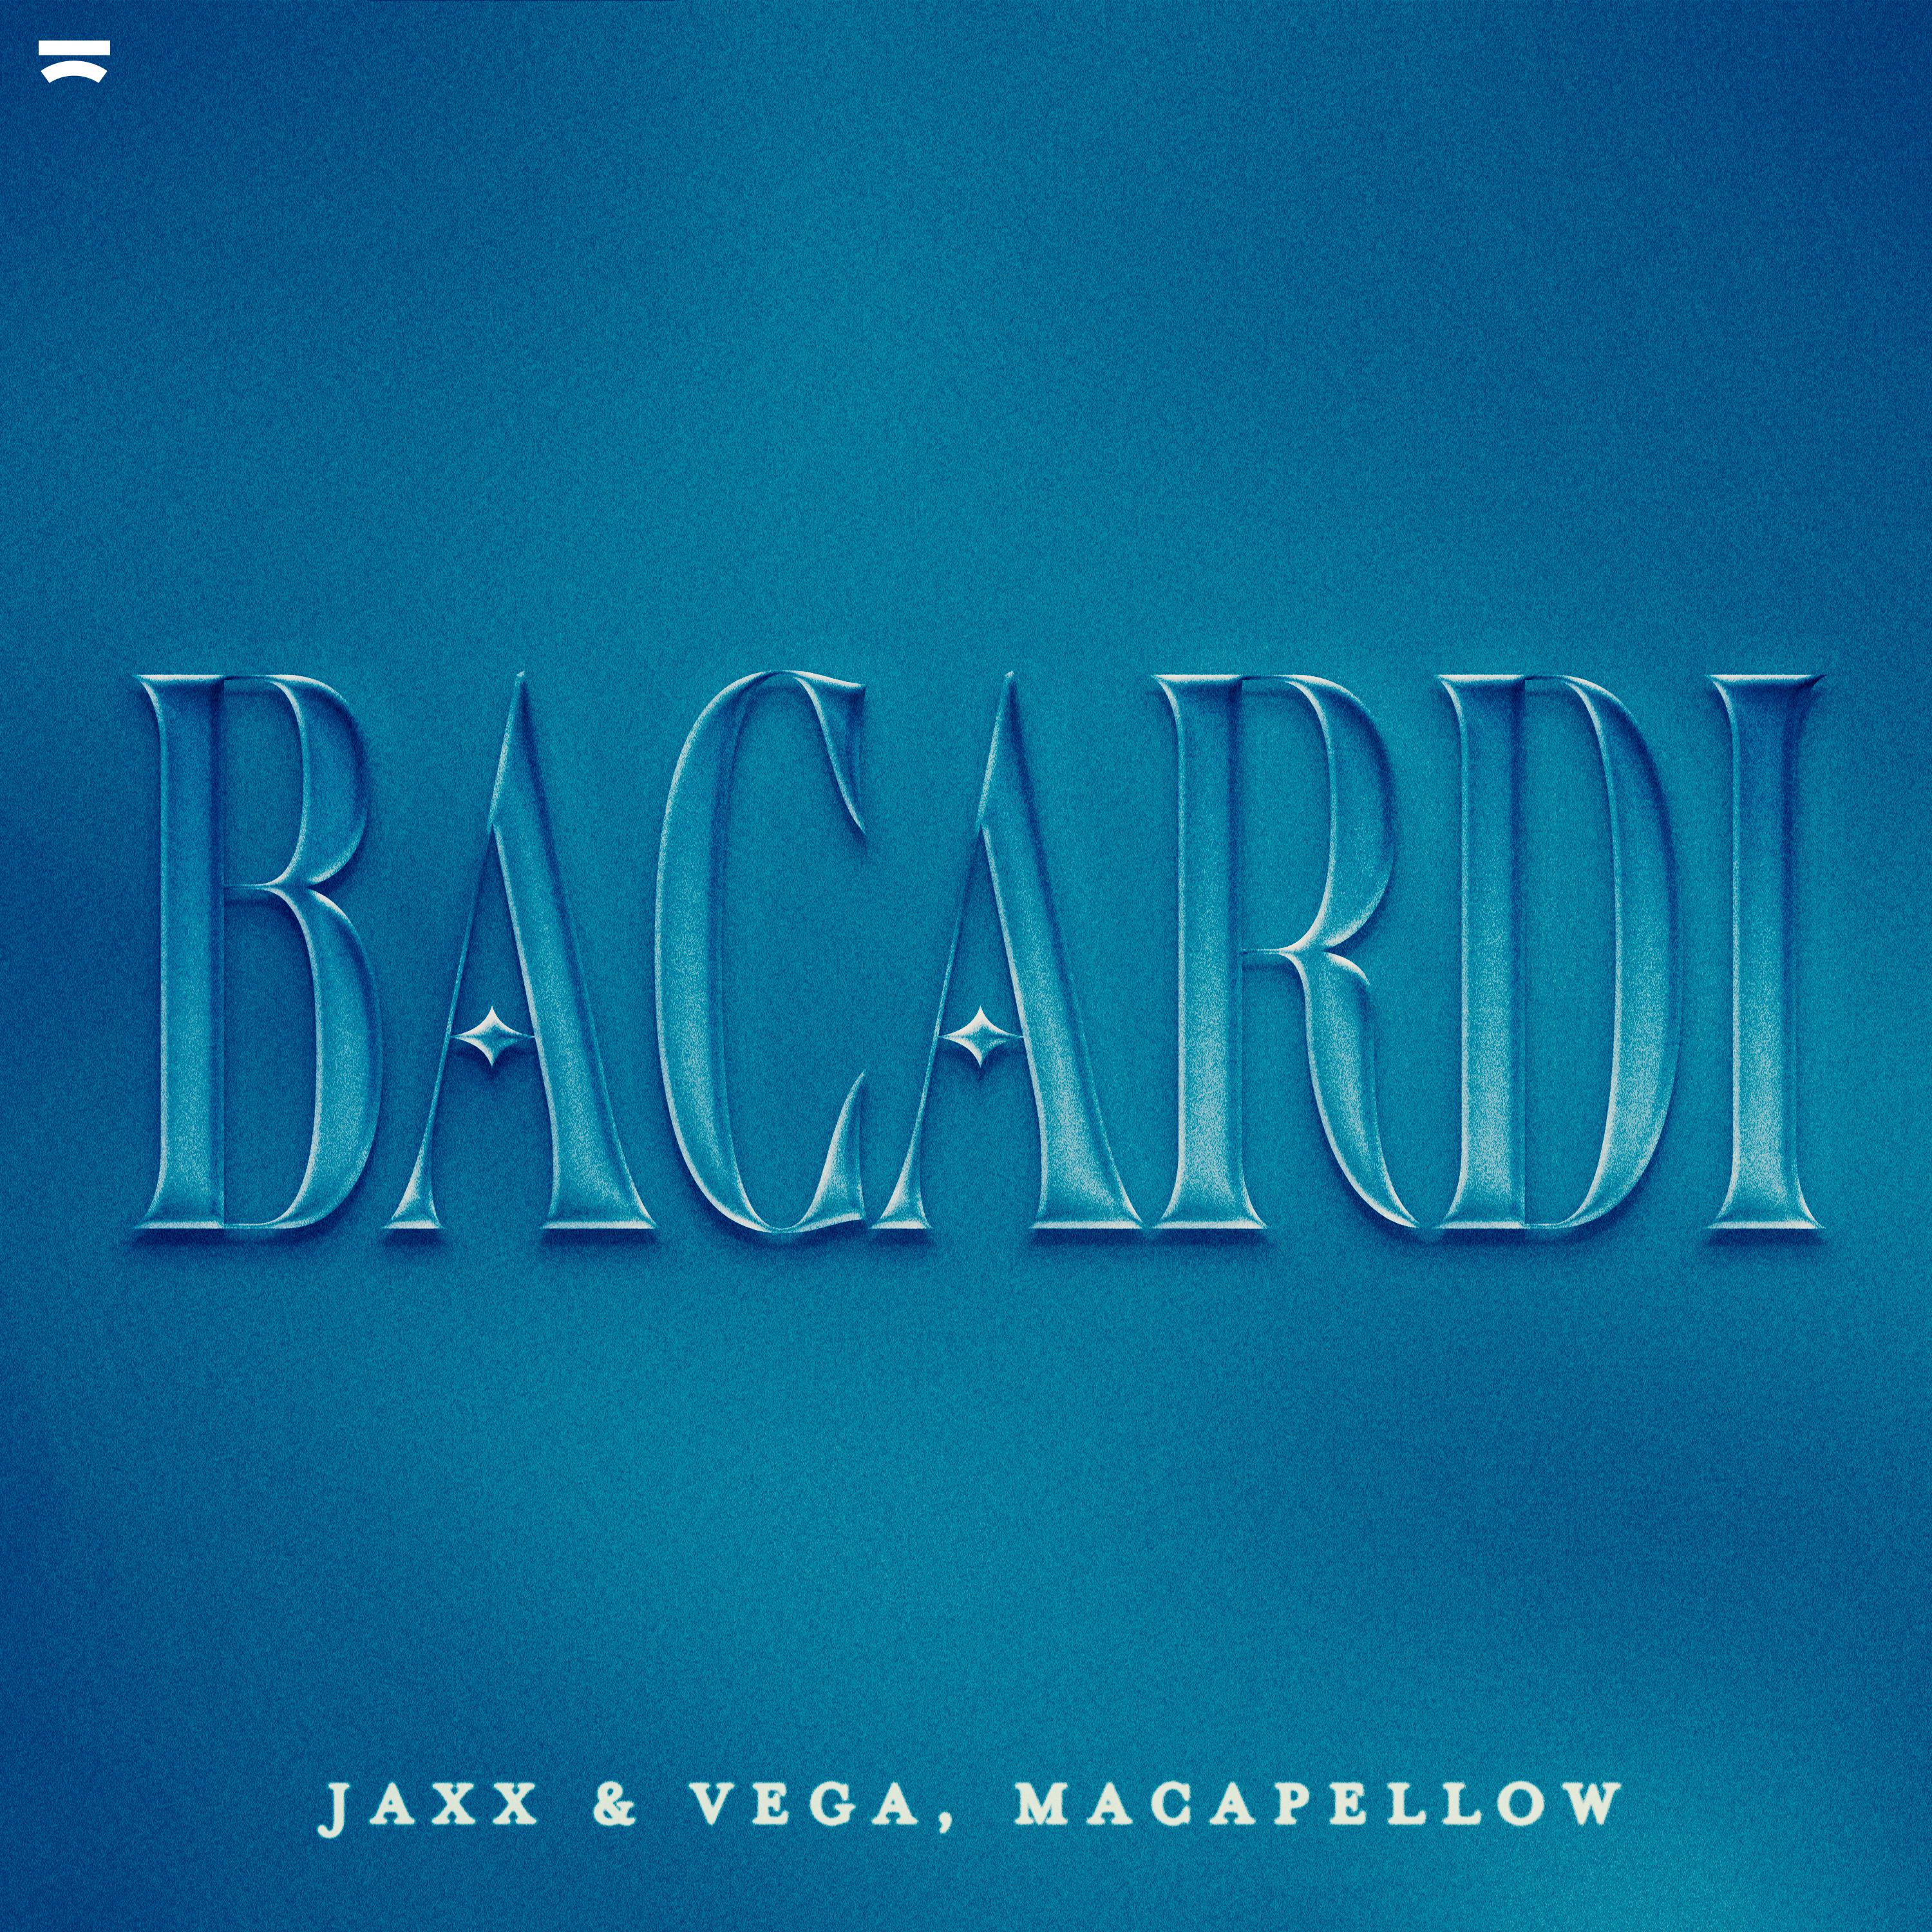 Jaxx & Vega - Bacardi